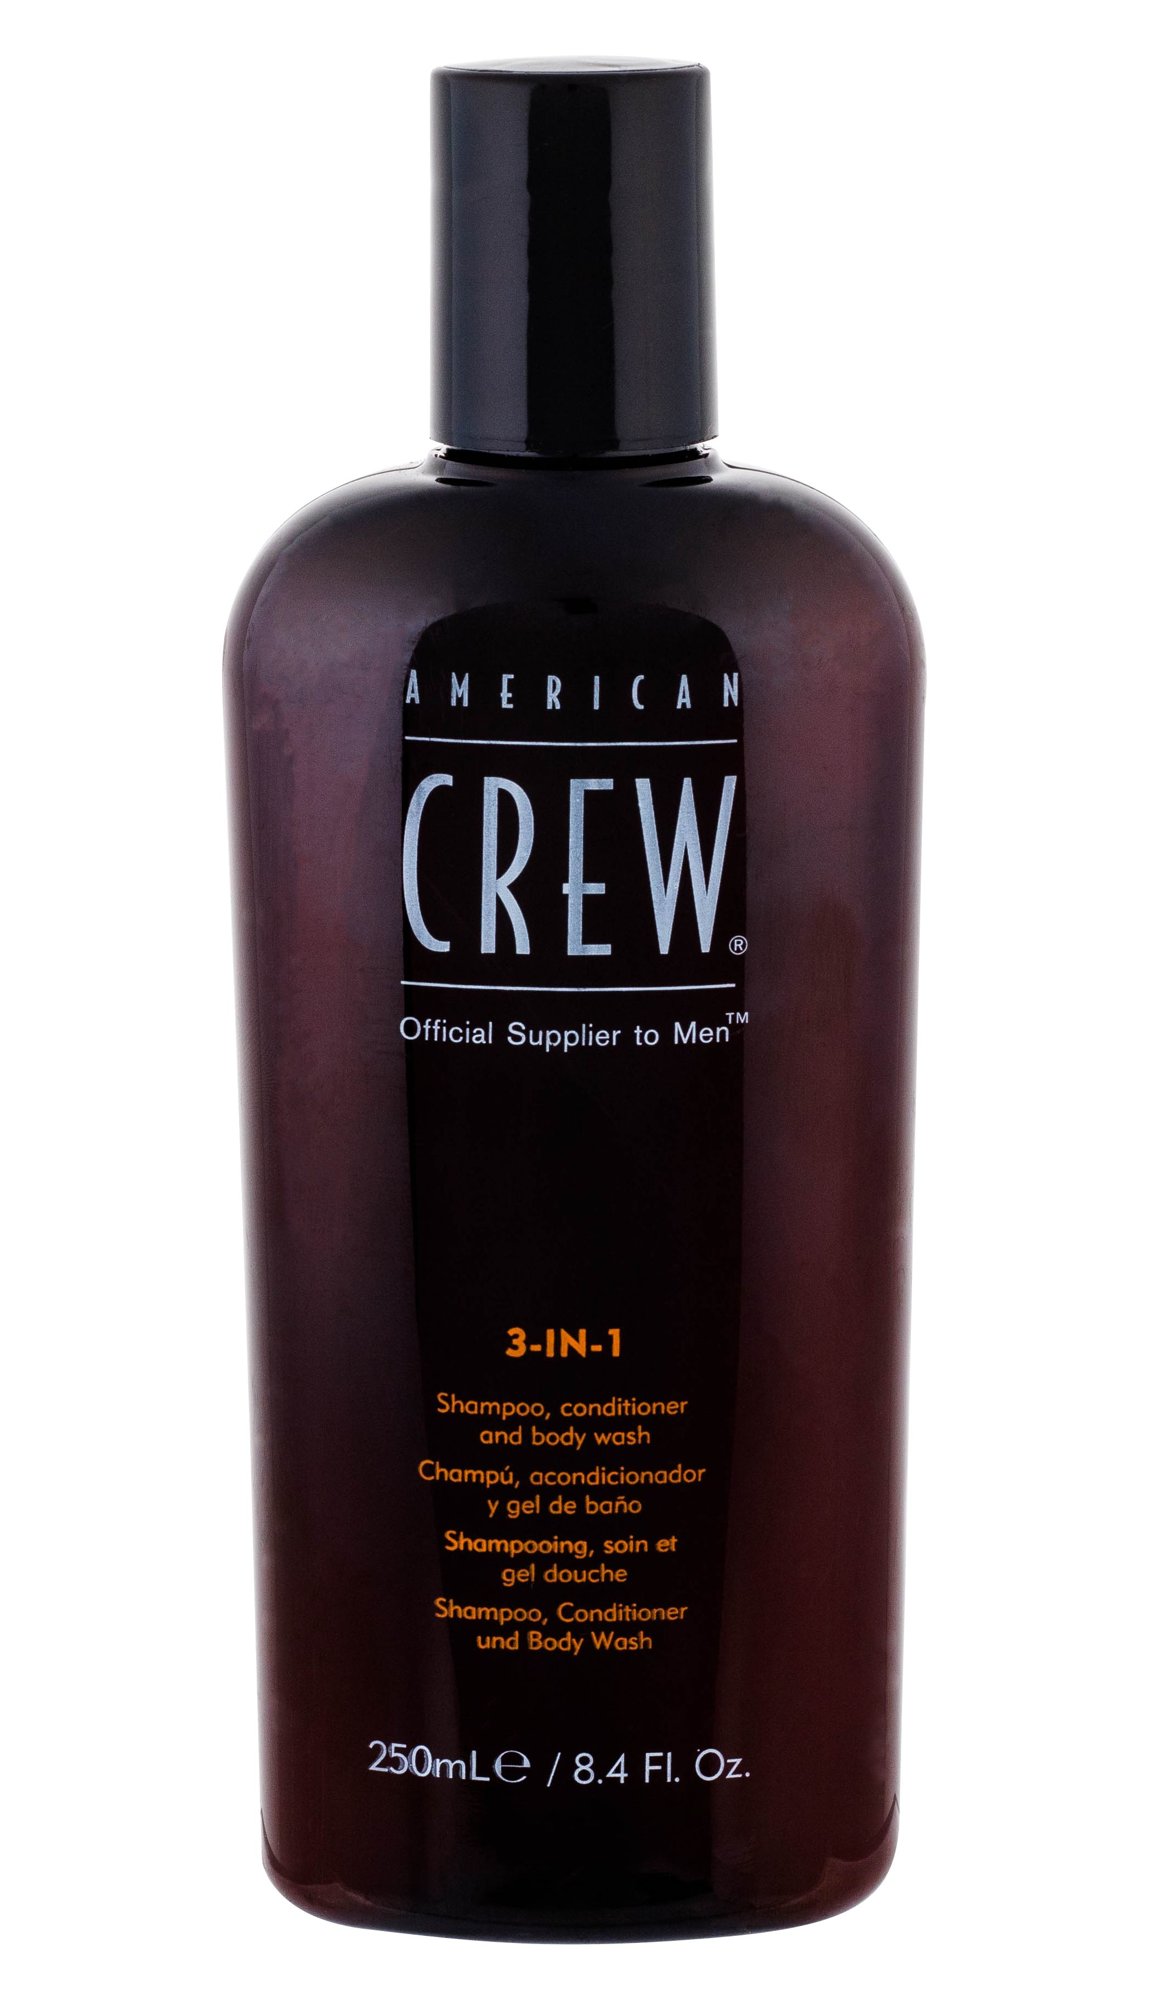 American Crew 3-IN-1 Shampoo, Conditioner & Body Wash 250ml šampūnas